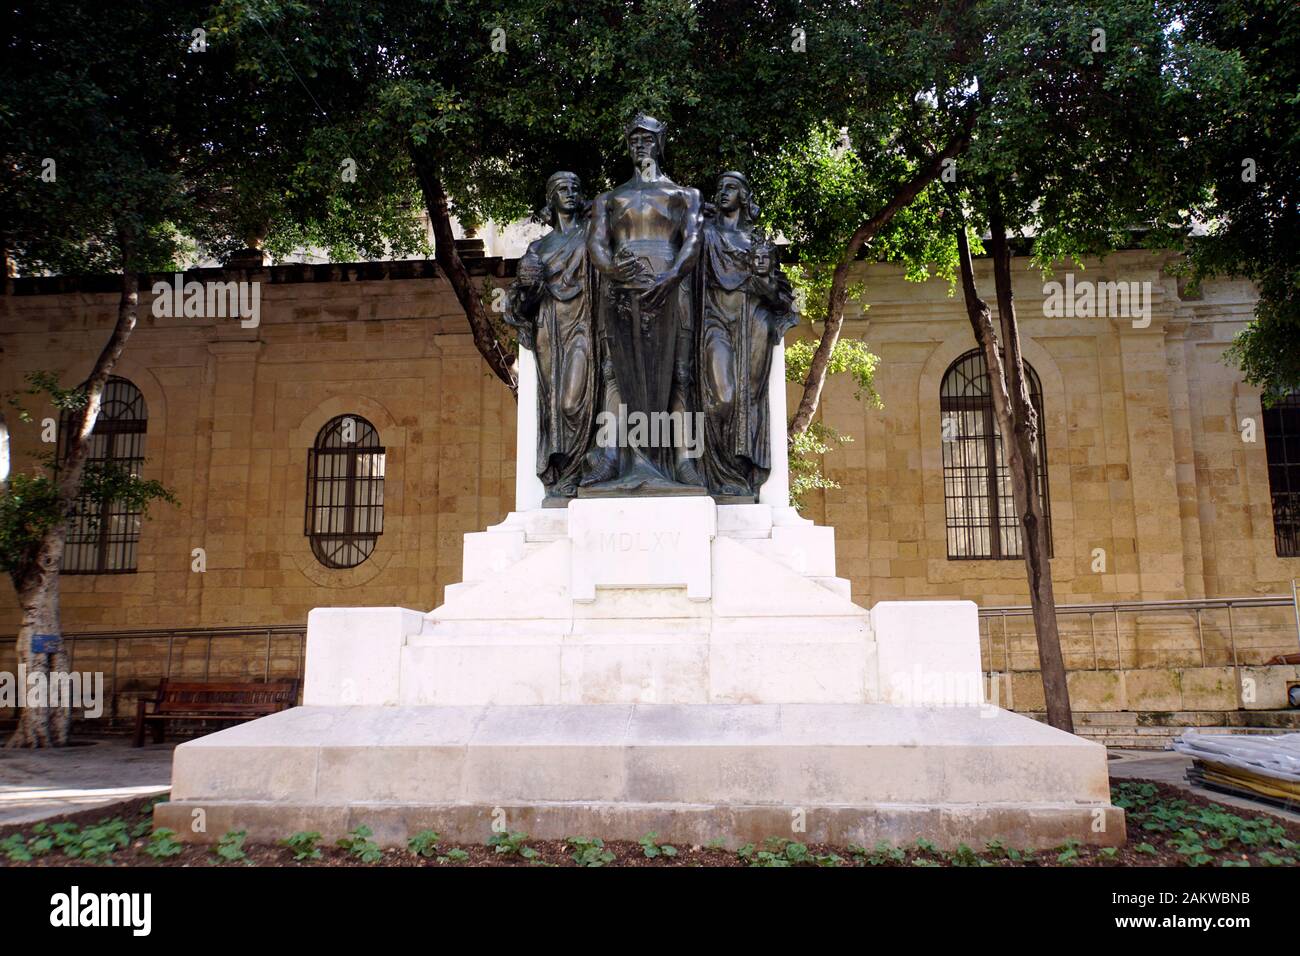 Denkmal der grossen Belagerung von 1565, Valletta, Malta Foto Stock